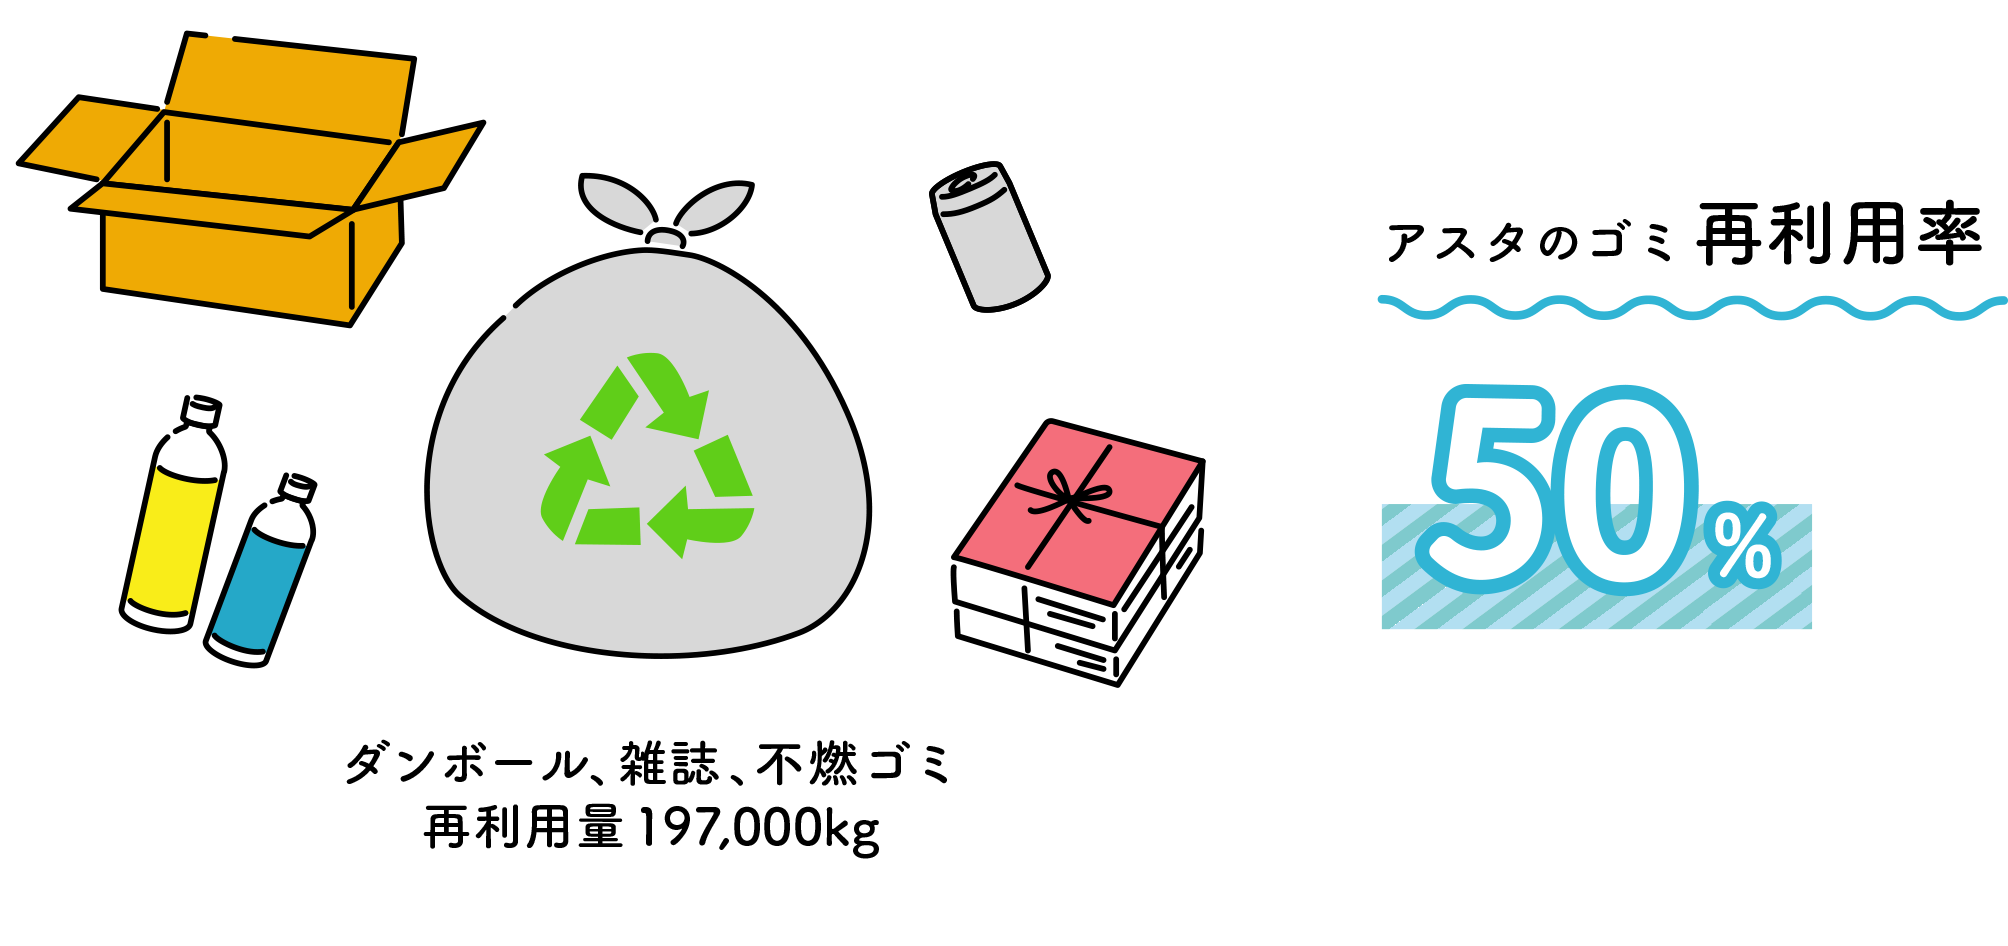 アスタのゴミ再利用率50%（ダンボール、雑誌、不燃ゴミ再利用量197,000kg）